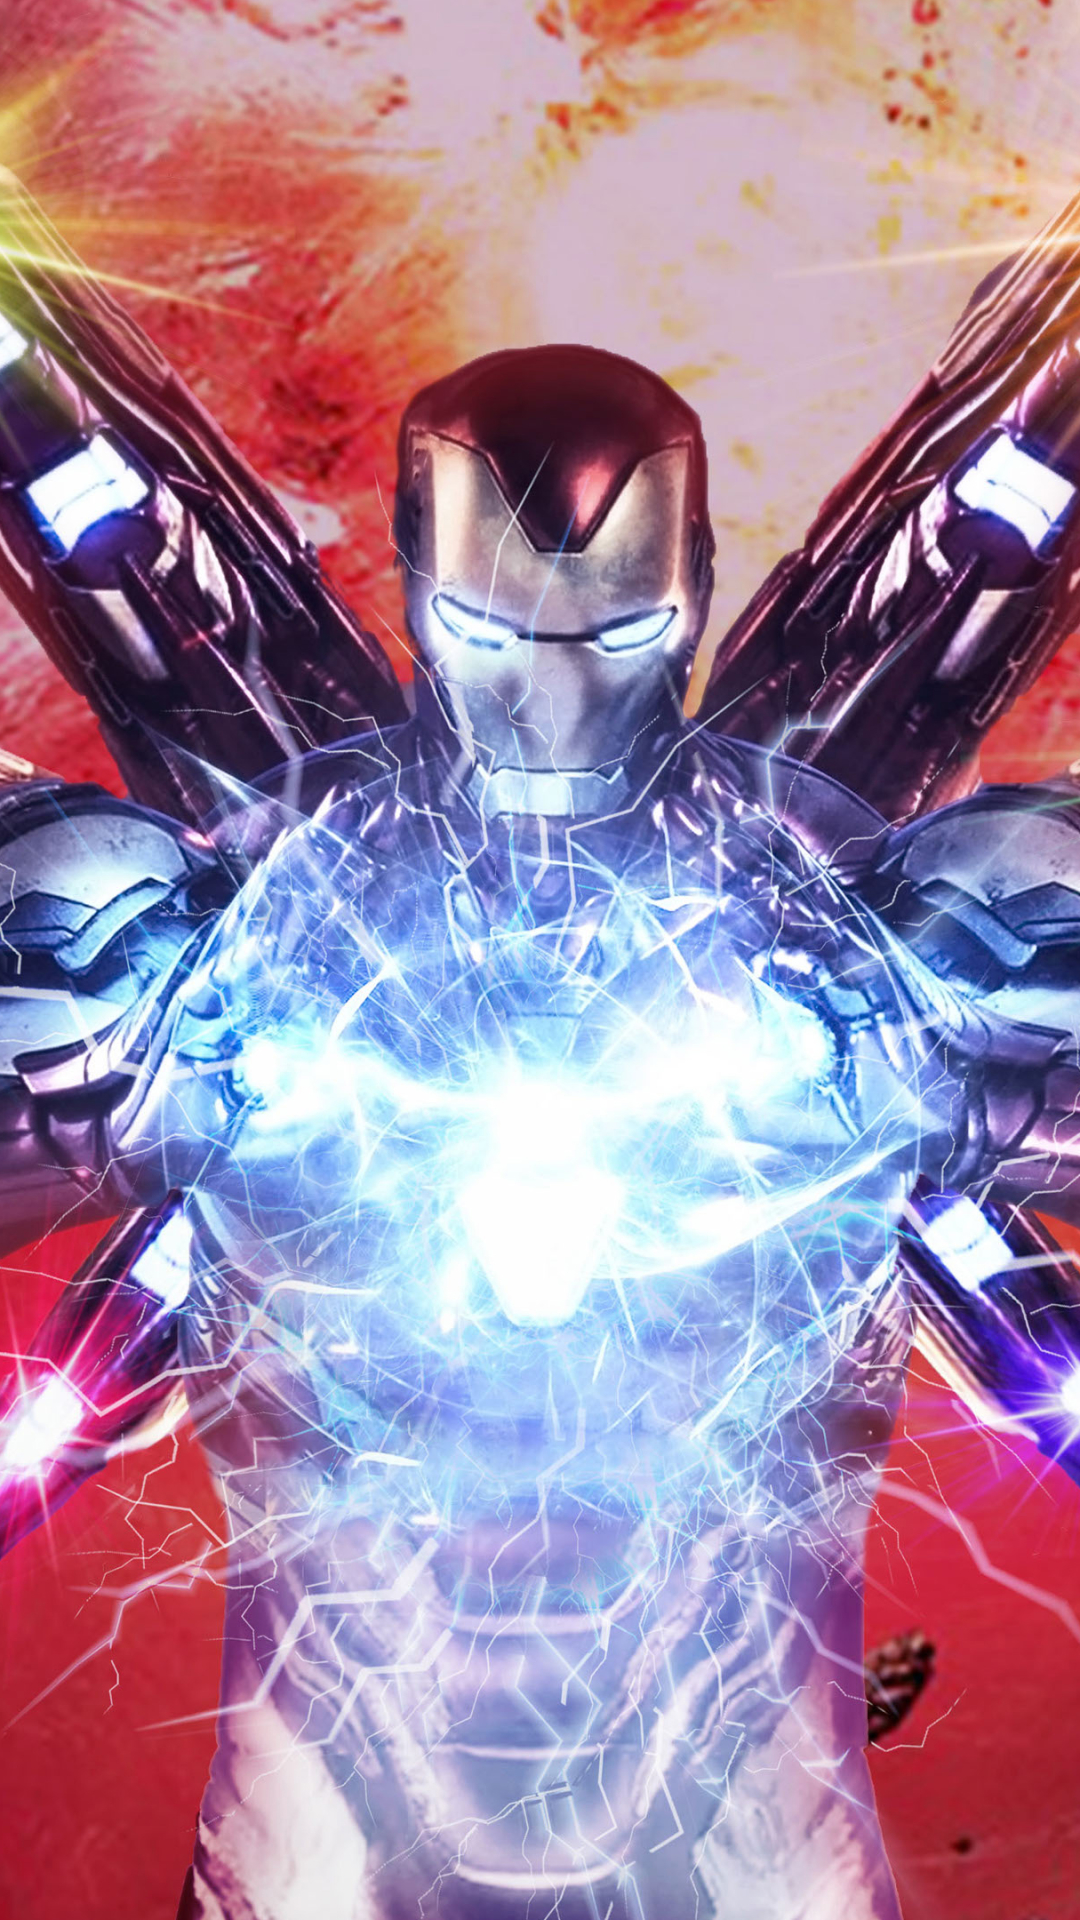 Descarga gratuita de fondo de pantalla para móvil de Los Vengadores, Películas, Hombre De Acero, Tony Stark, Vengadores: Endgame, Vengadores.